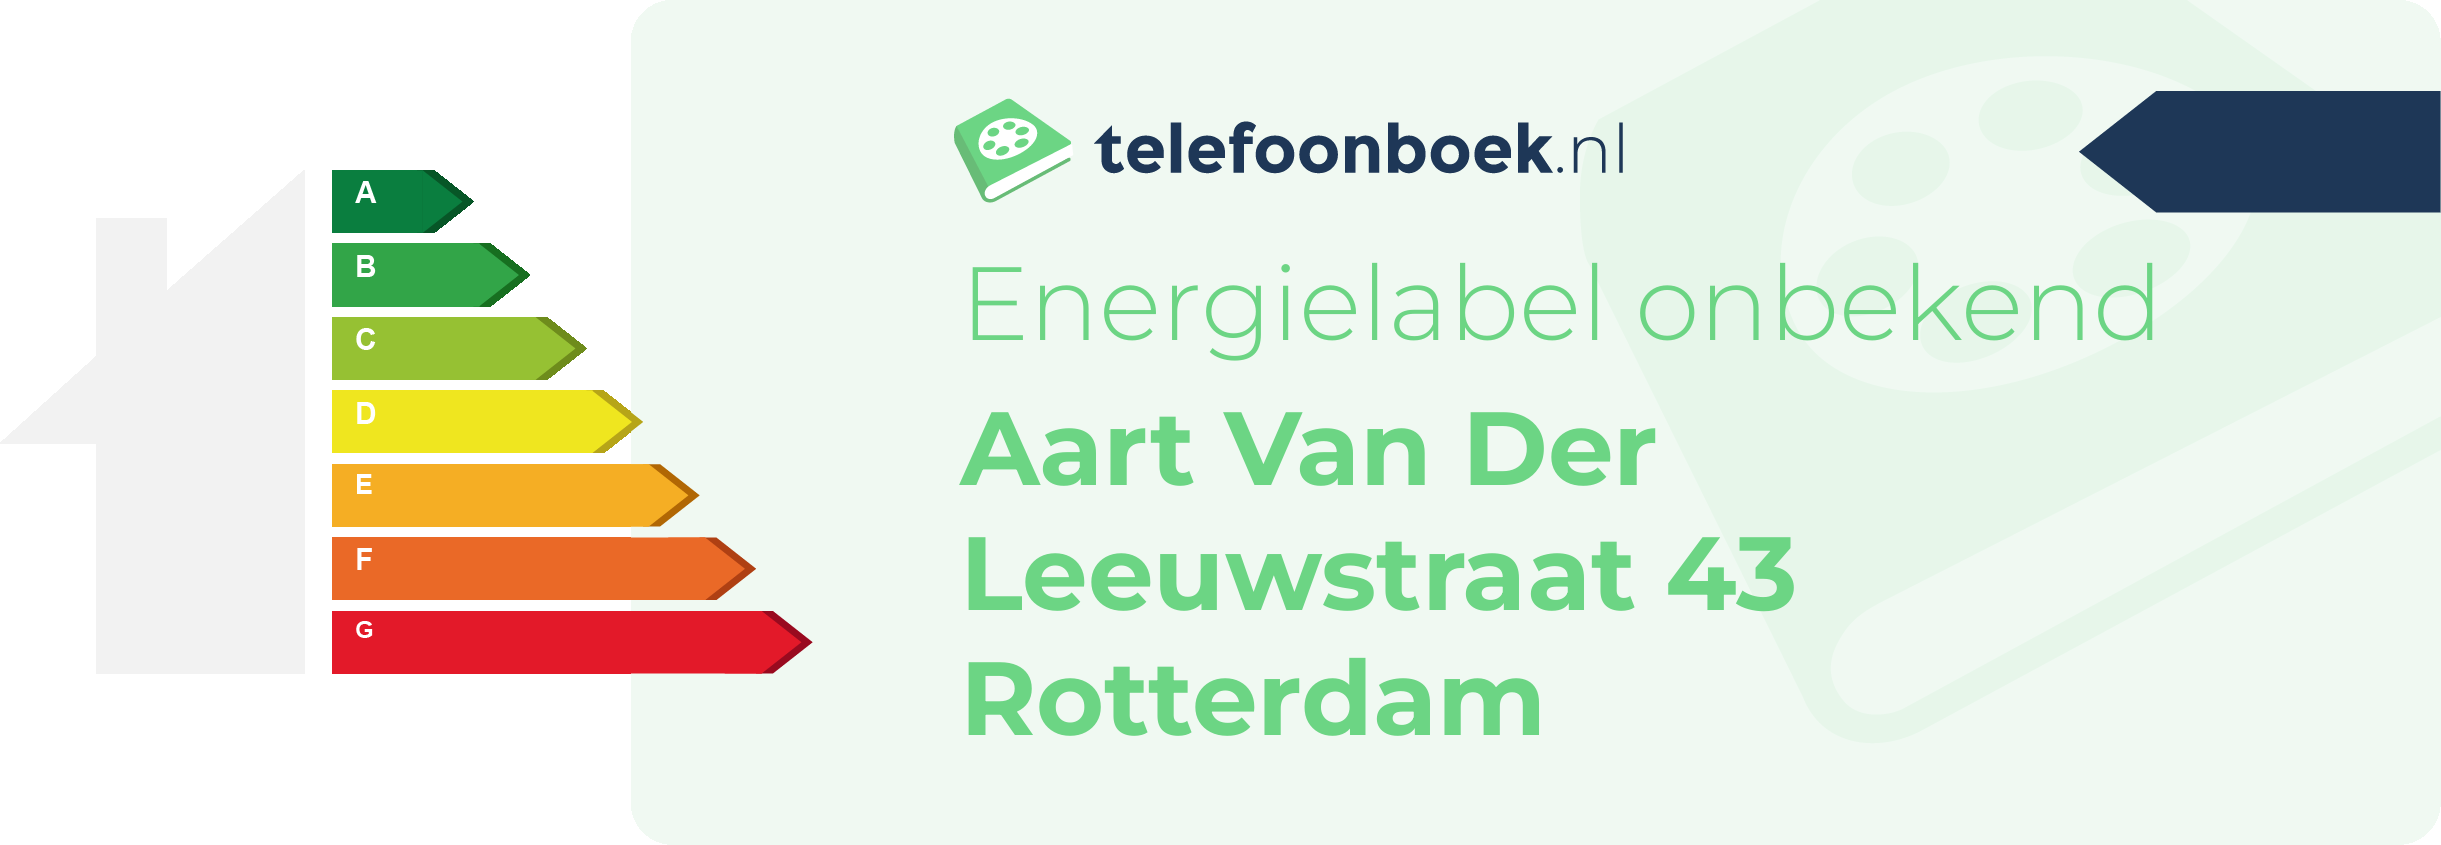 Energielabel Aart Van Der Leeuwstraat 43 Rotterdam